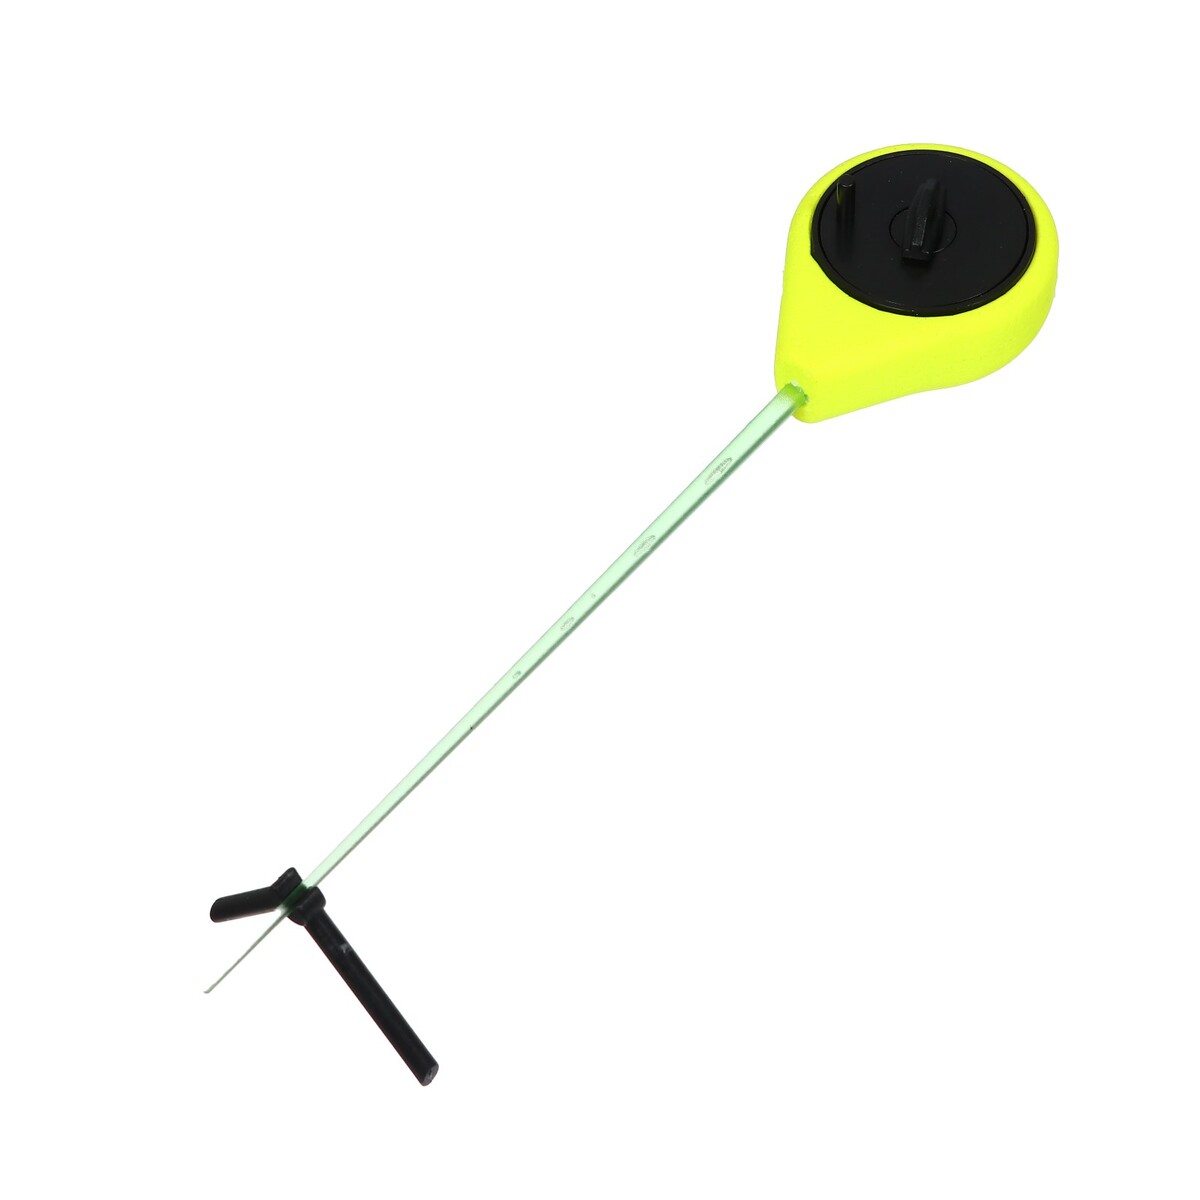 Удочка зимняя балалайка, цвет черный желтый, hfb-43 удочка зимняя пластик с неопреновой ручкой 40 см